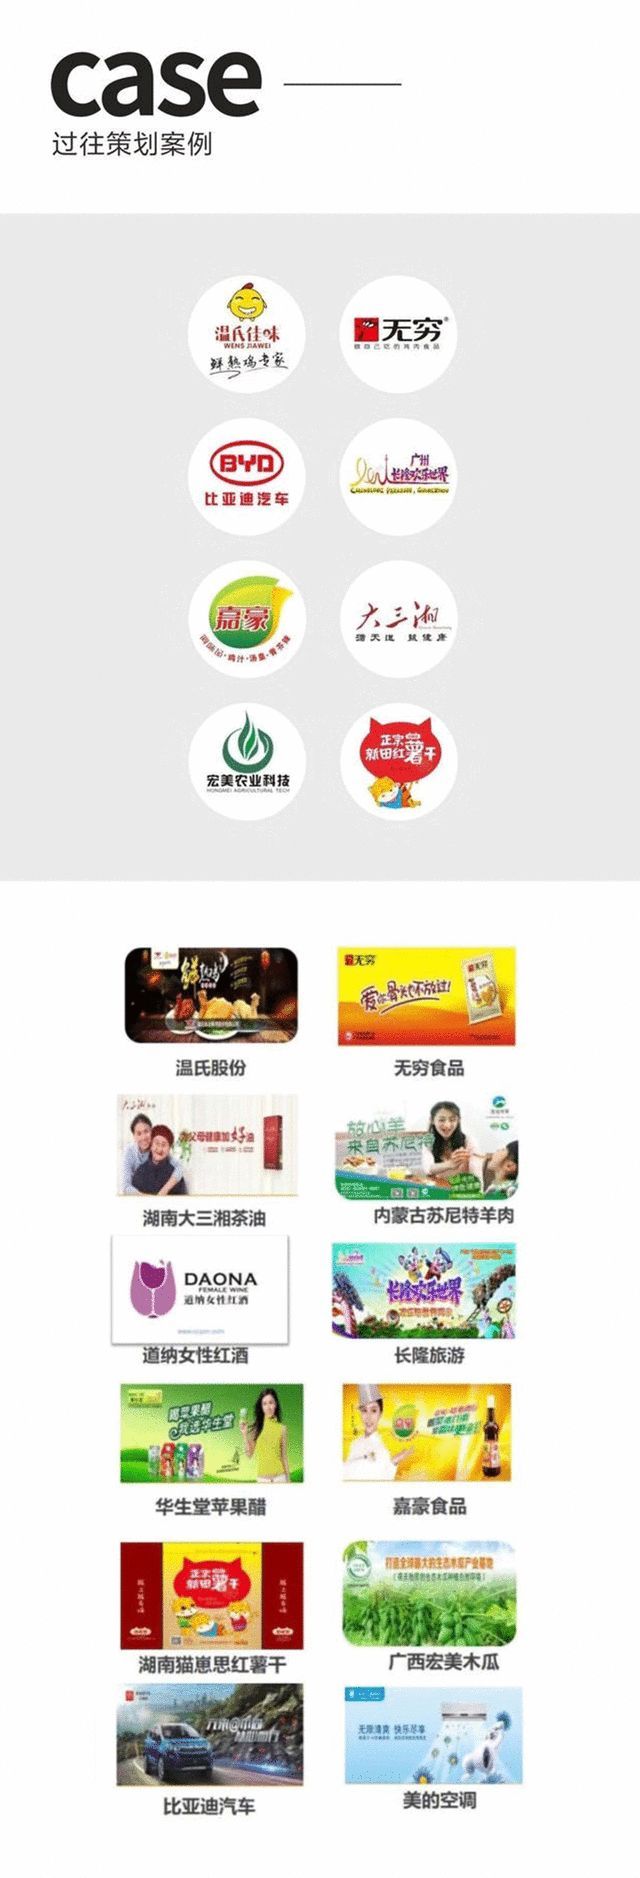 新知达人, 食品行家，广州年轻派战略转型顾问，用IMC全球整合方法，协助企业战略转型